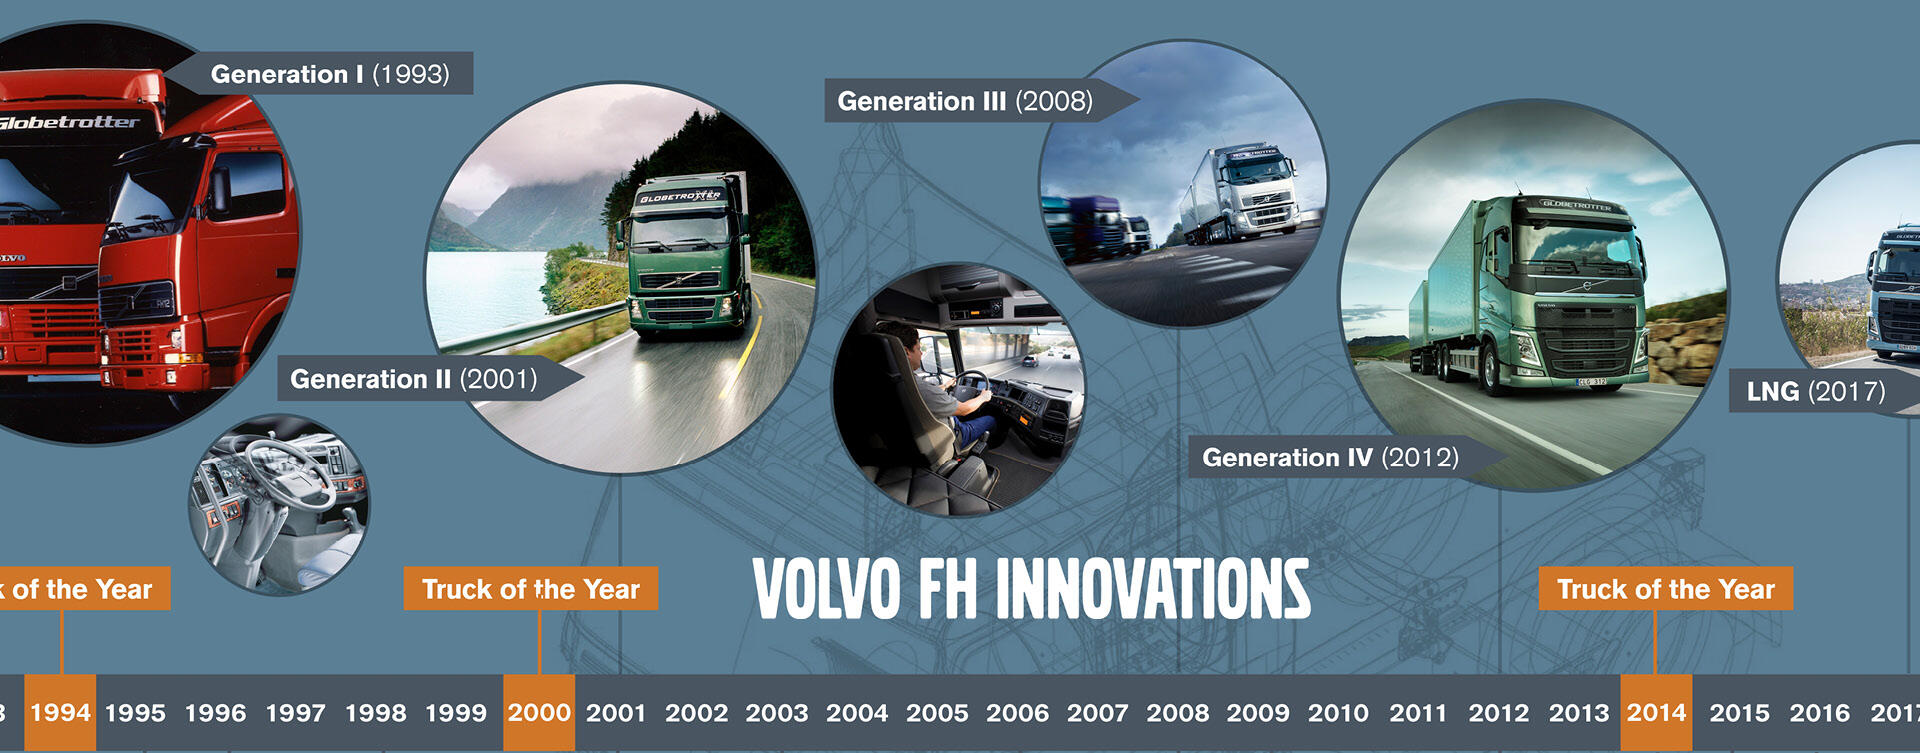 25 jaar Volvo FH